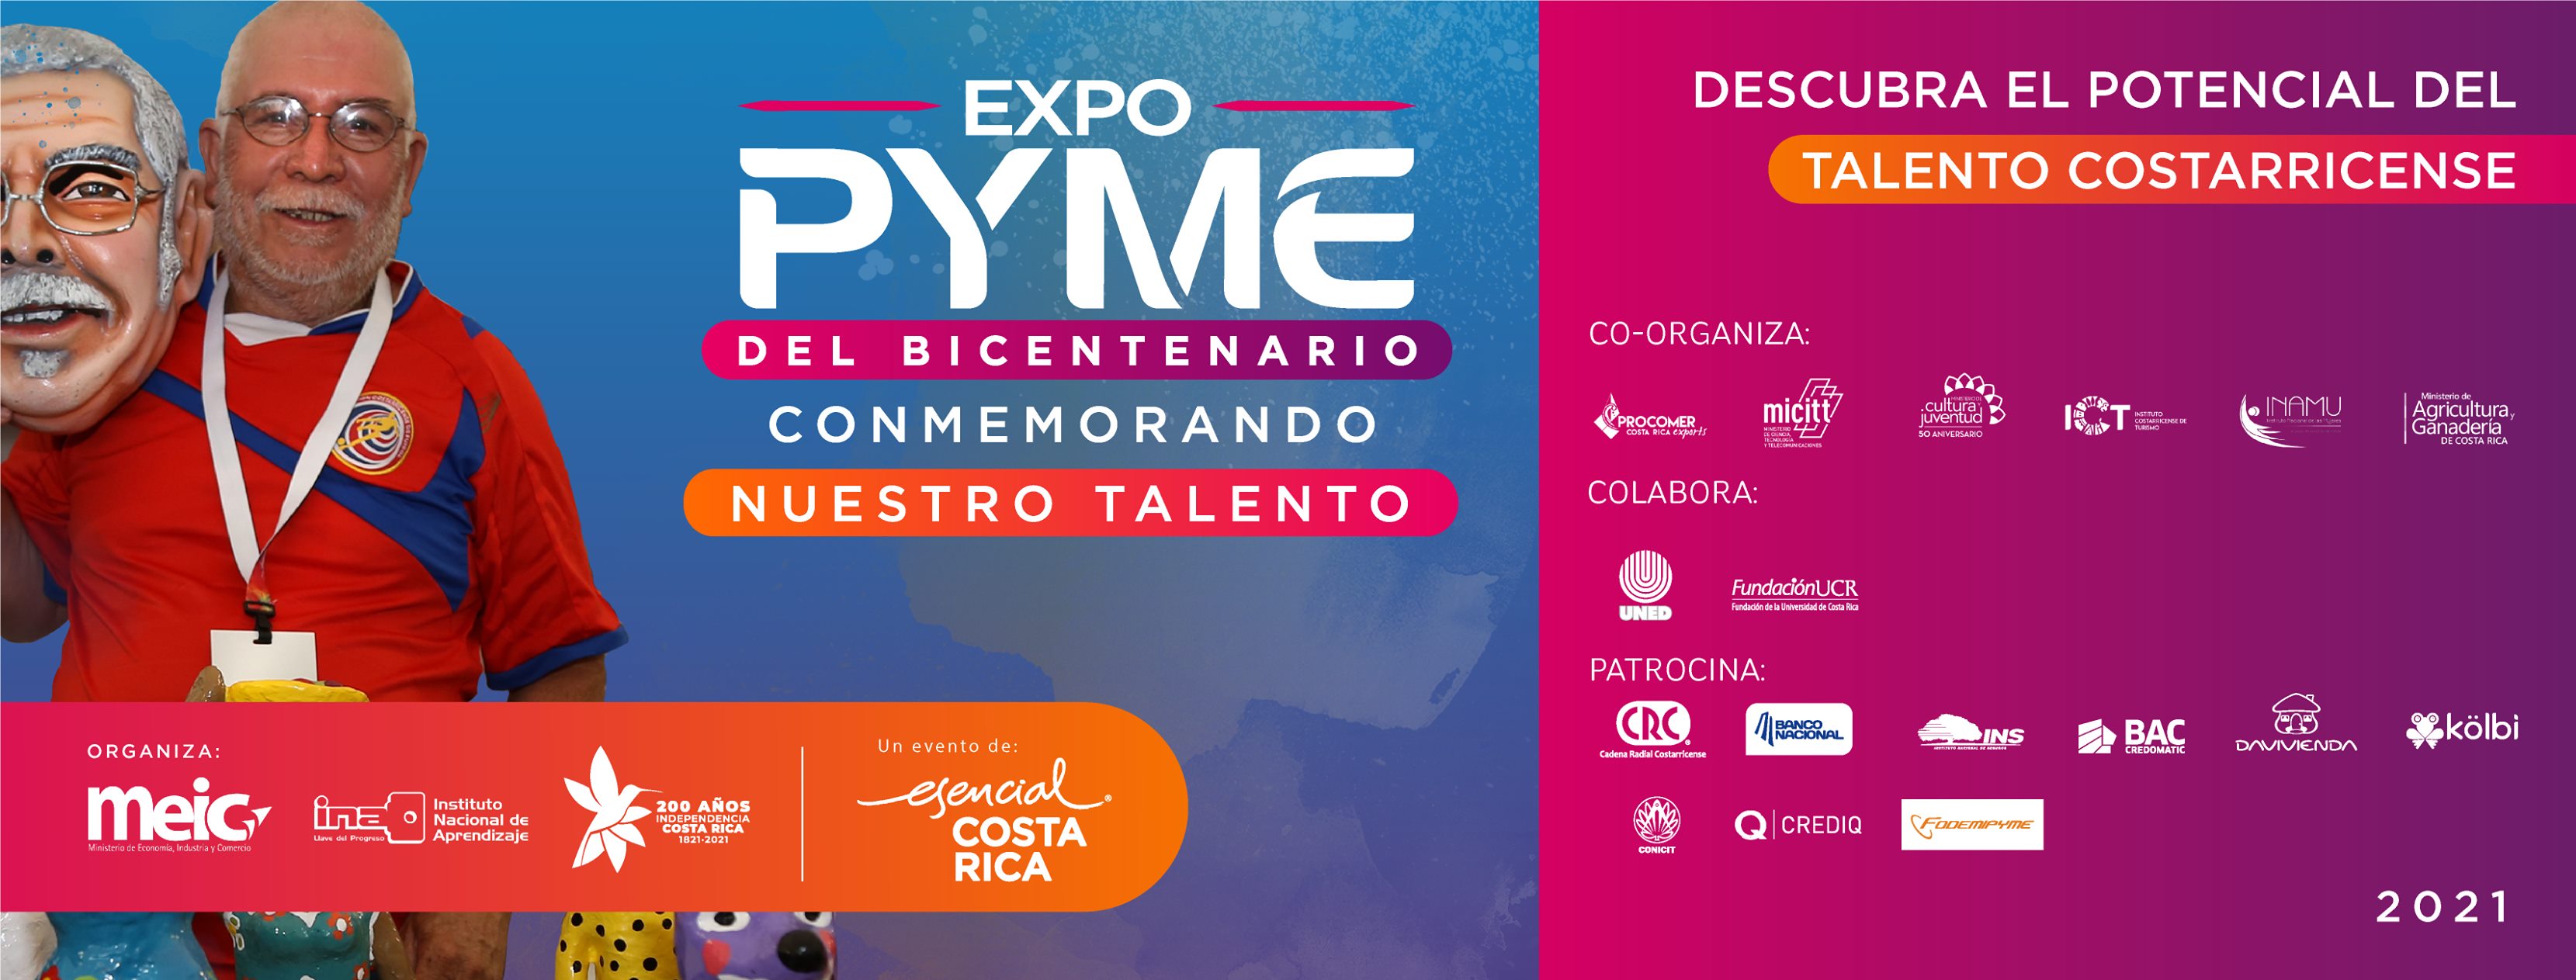 Expo PYME del Bicentenario 2021: Conmemorando Nuestro Talento